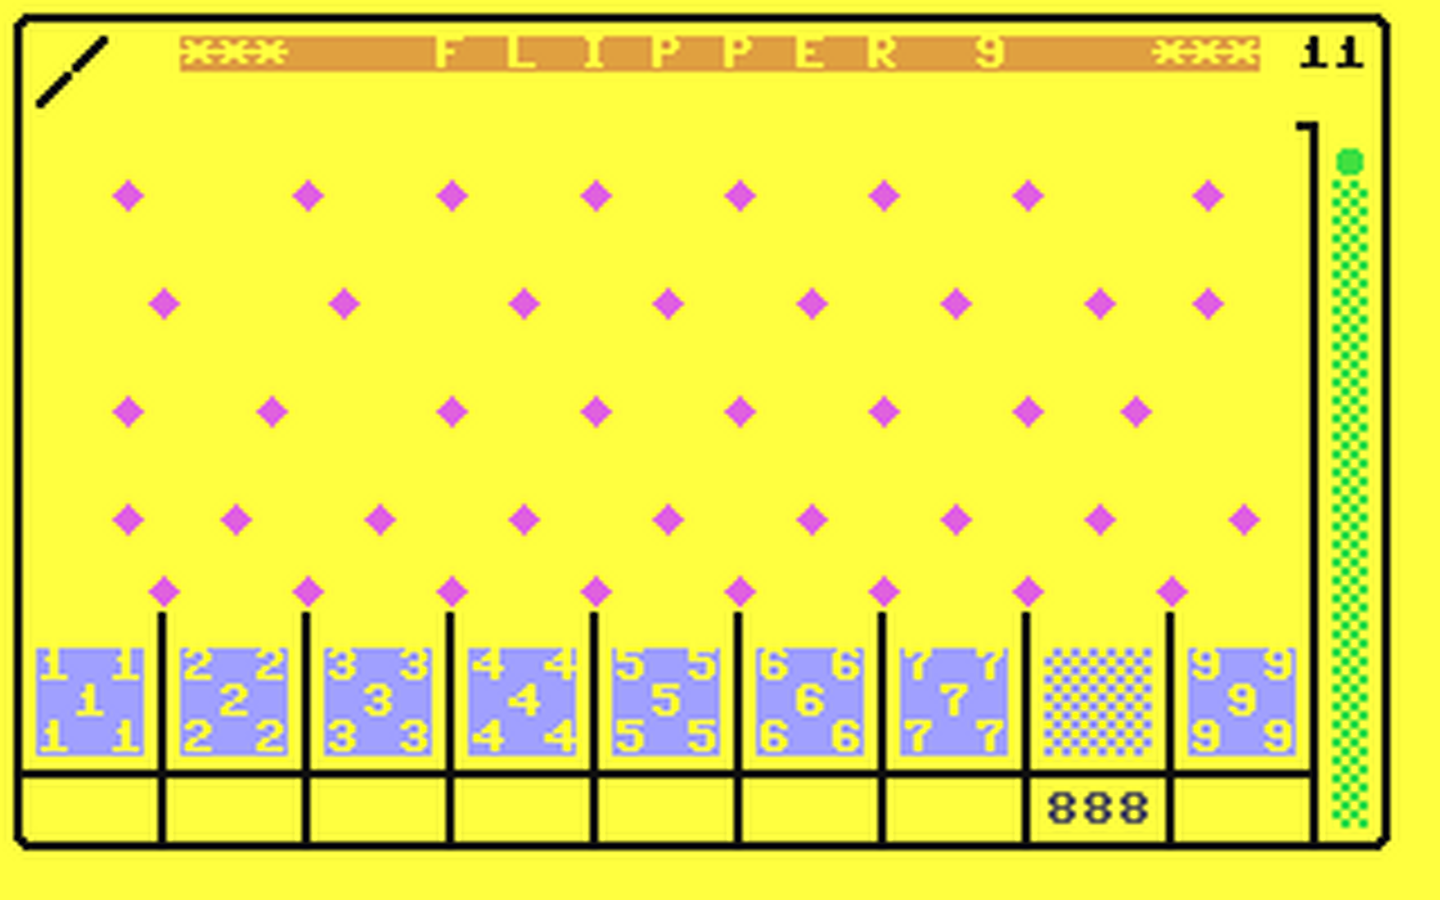 C64 GameBase Flipper_9 Robtek_Ltd. 1986